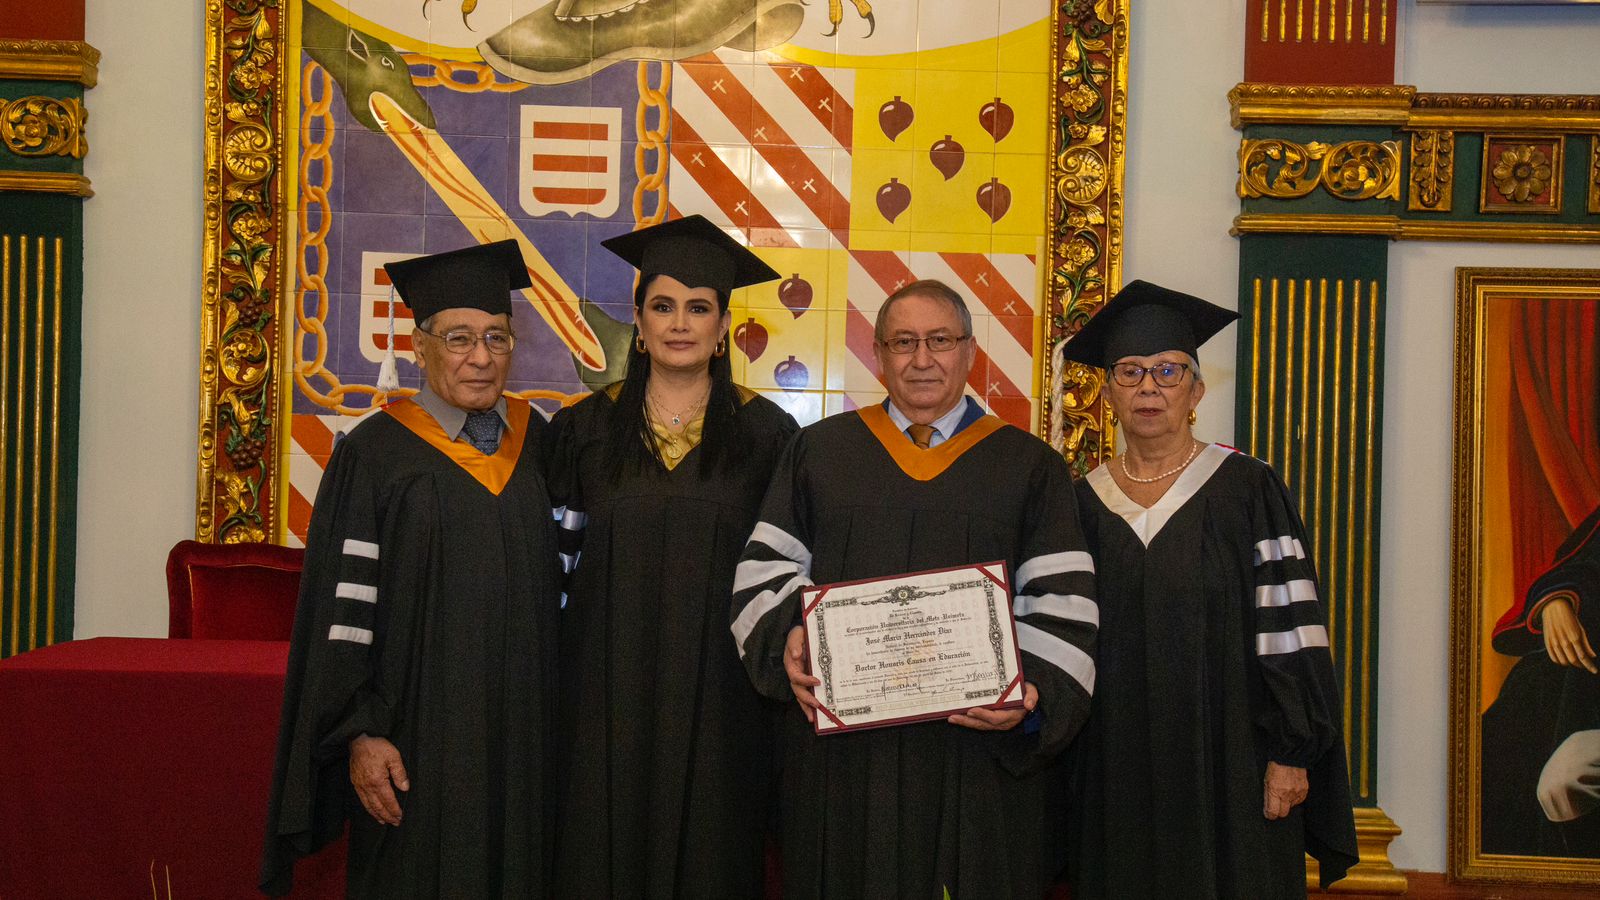 José Mª Hernández Díaz, catedrático de Historia de la Educación, doctor honoris causa por la Corporación Universitaria del Meta-UNIMETA